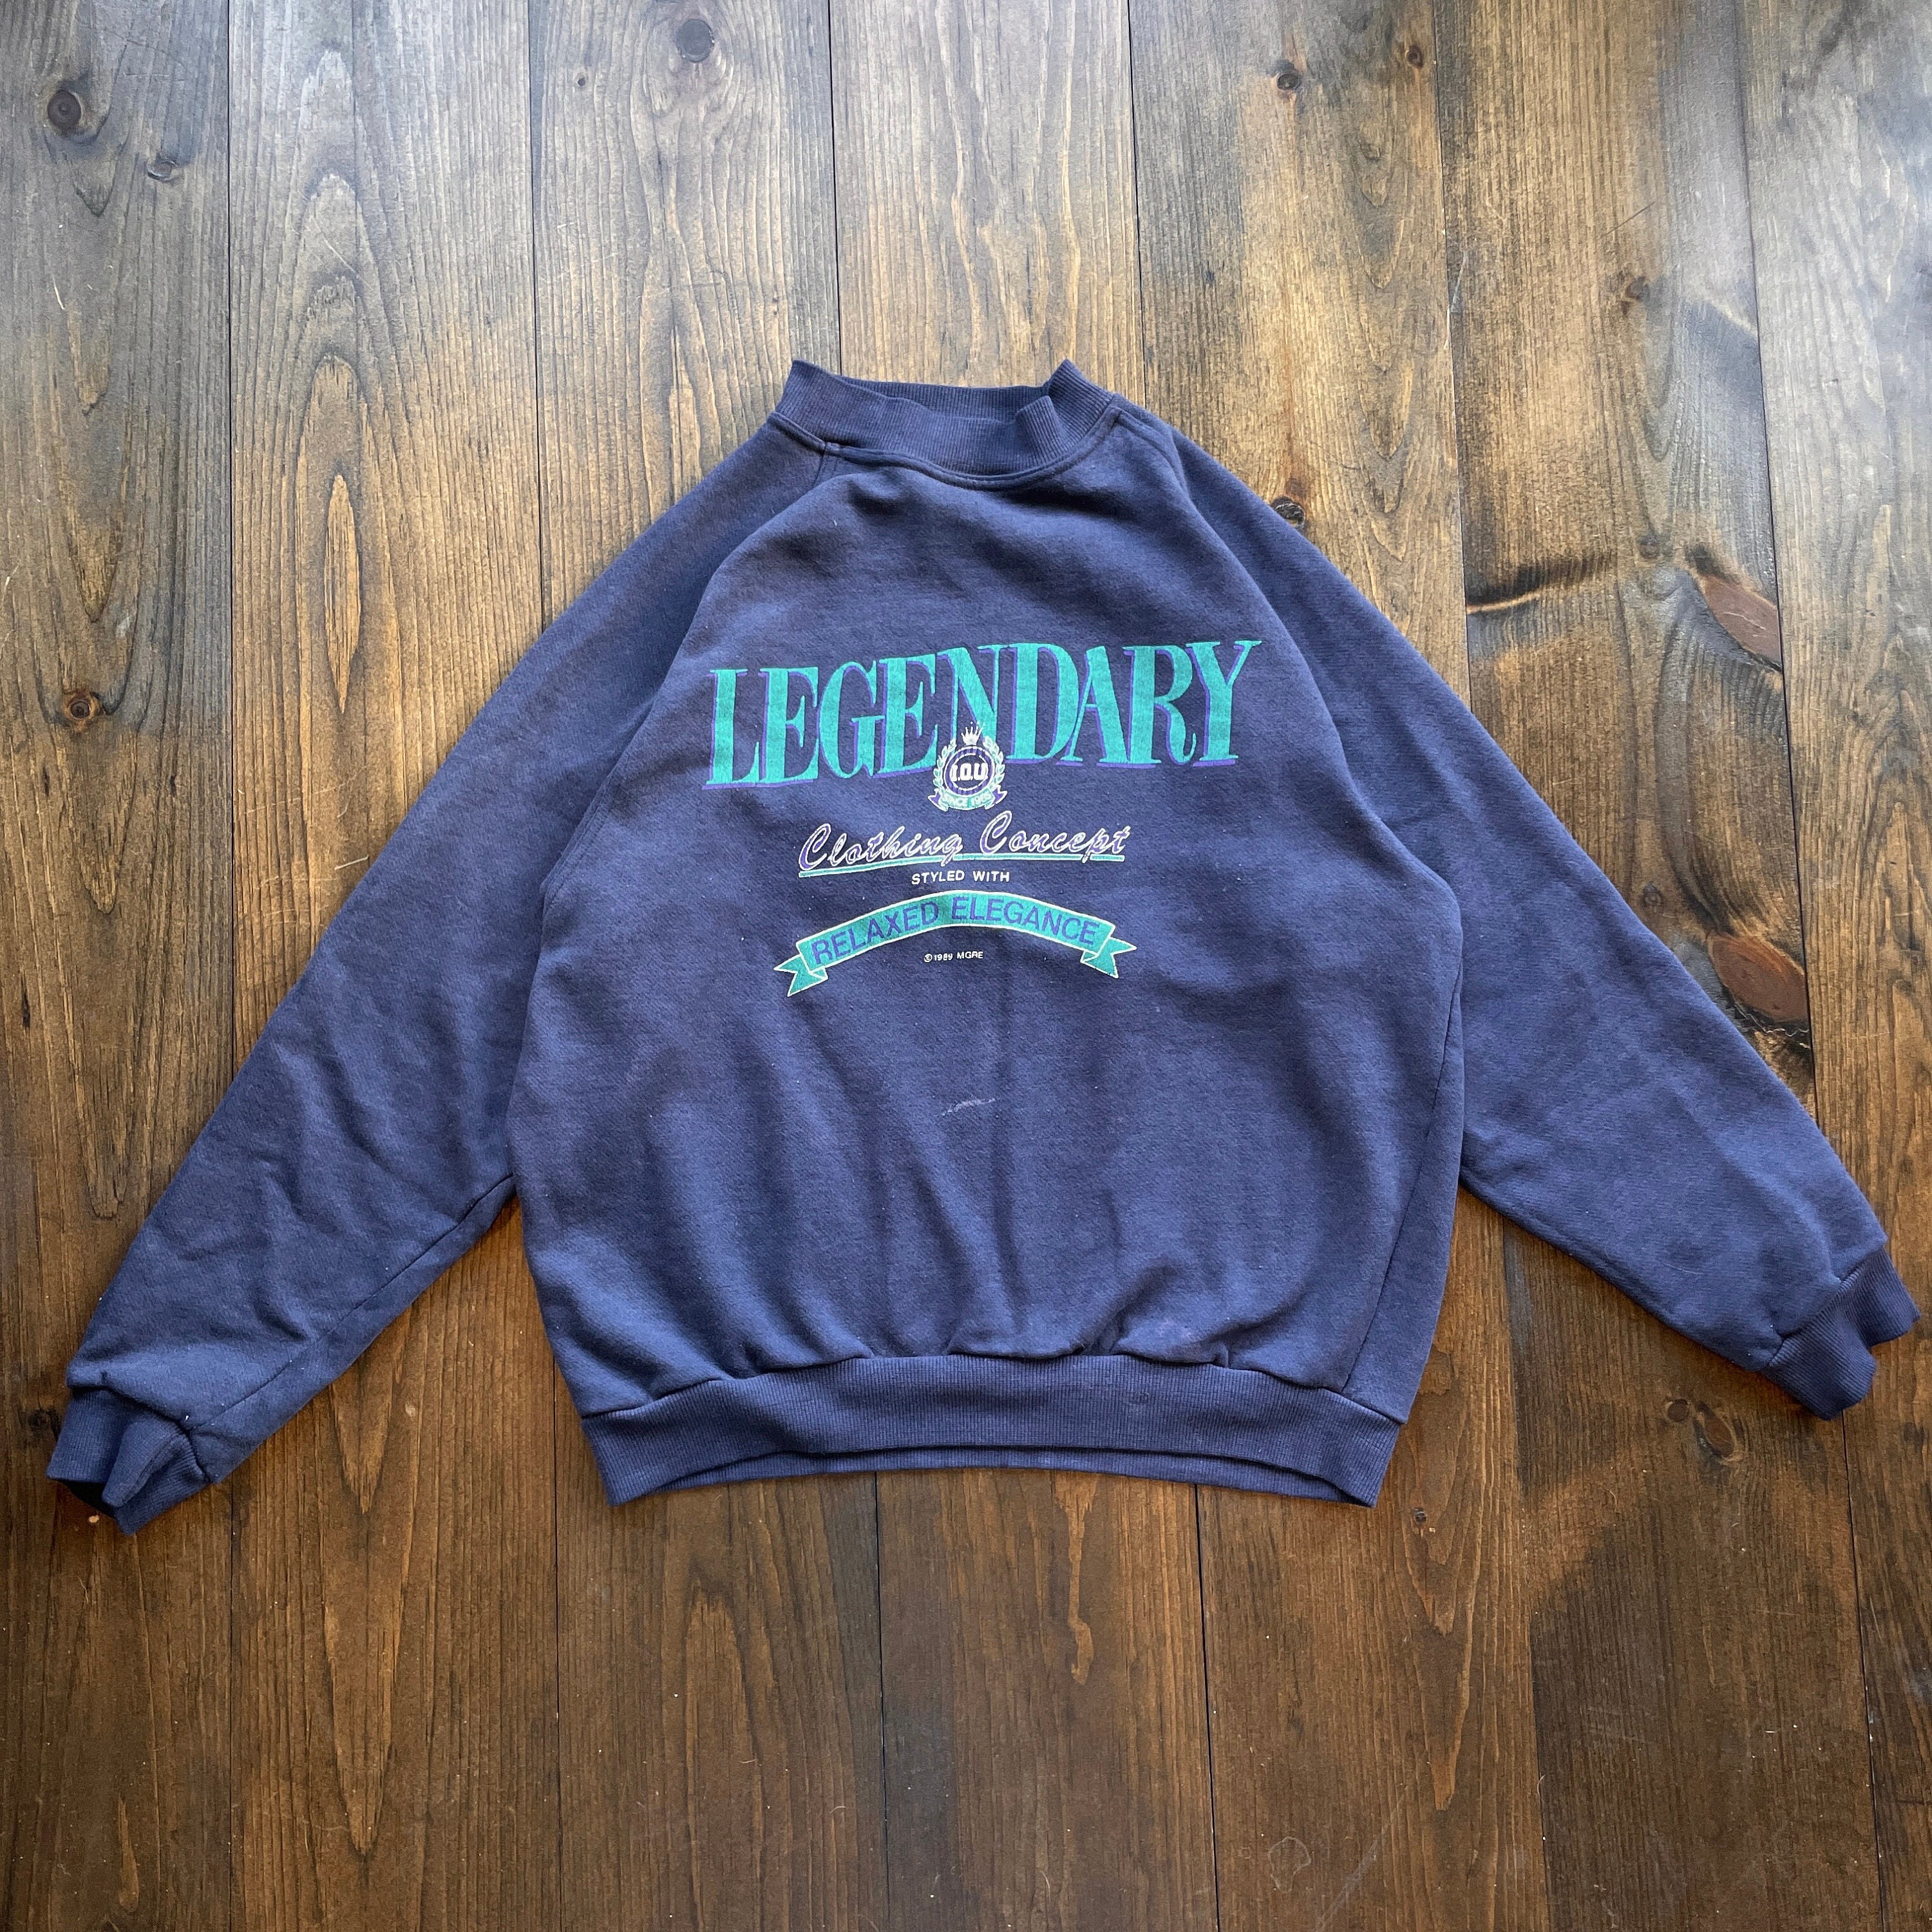 Vintage 1989 Legendary Clothing Crewneck Sweatshirt - Etsy